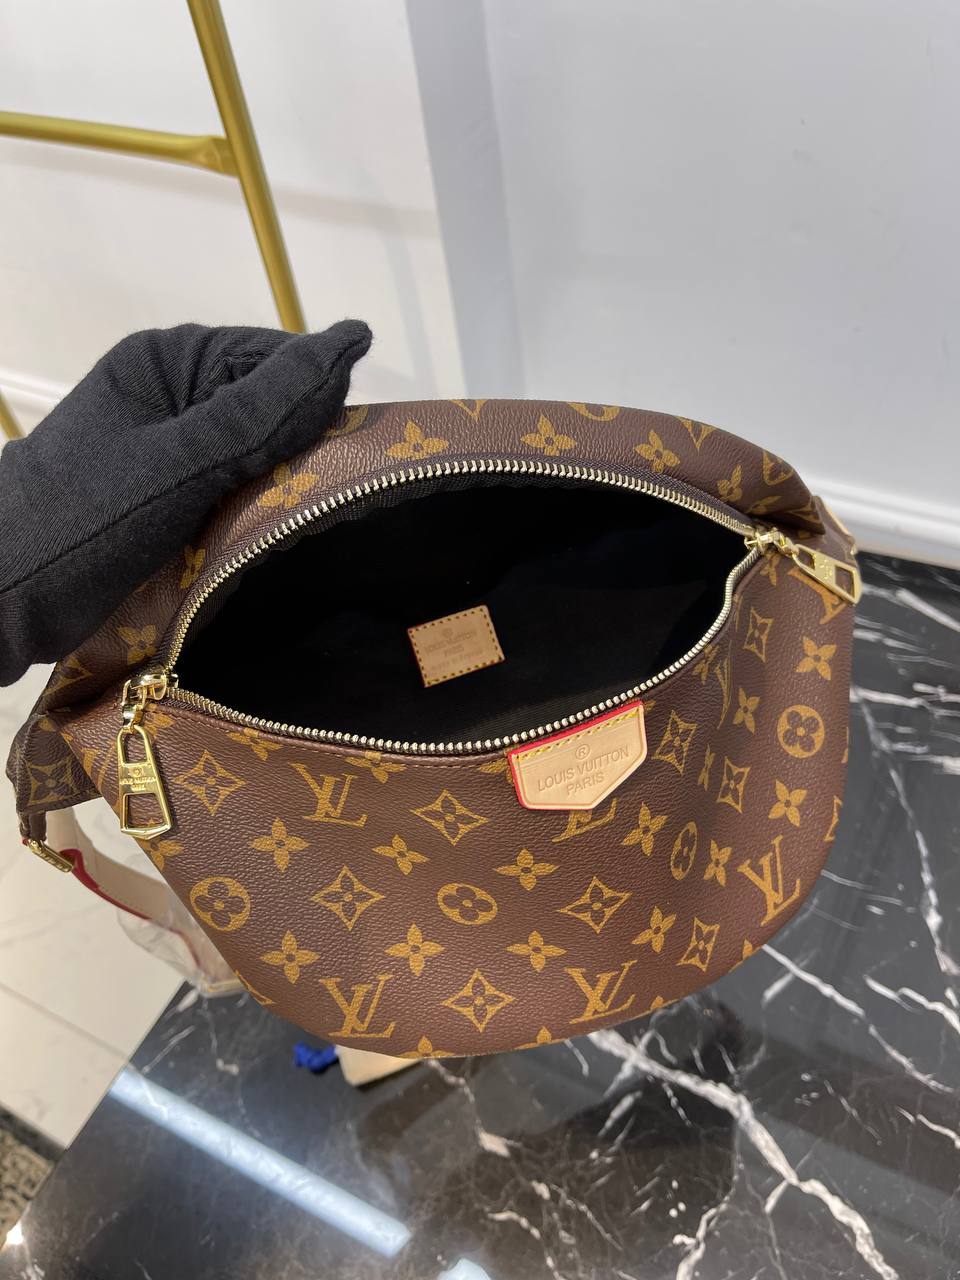 VERKAUFT - Louis Vuitton Bumbag M44575 Monogram Giant Rot * Tasche  Schultertasche Bauchtasche * mit Beleg von 2019 * wie NEU